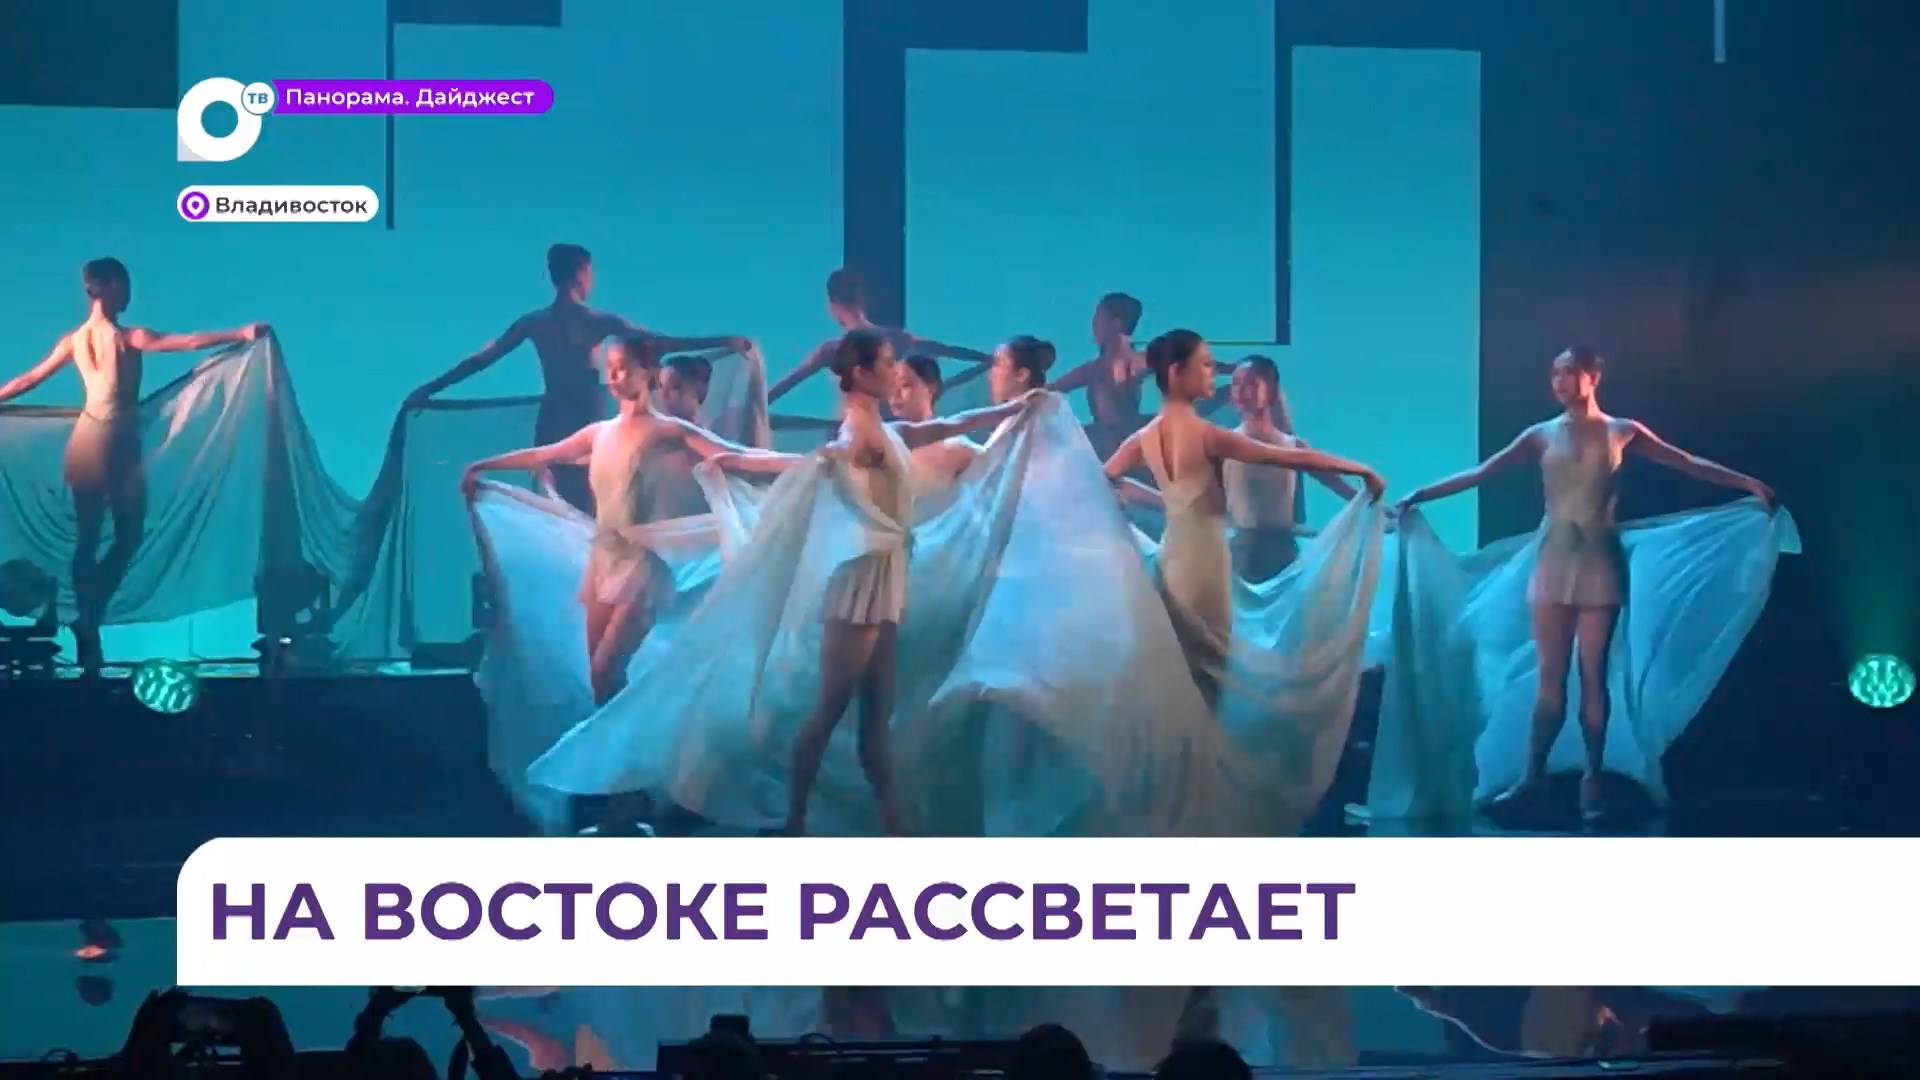 Современный балет в исполнении артистов из китайского Харбина показали во Владивостоке